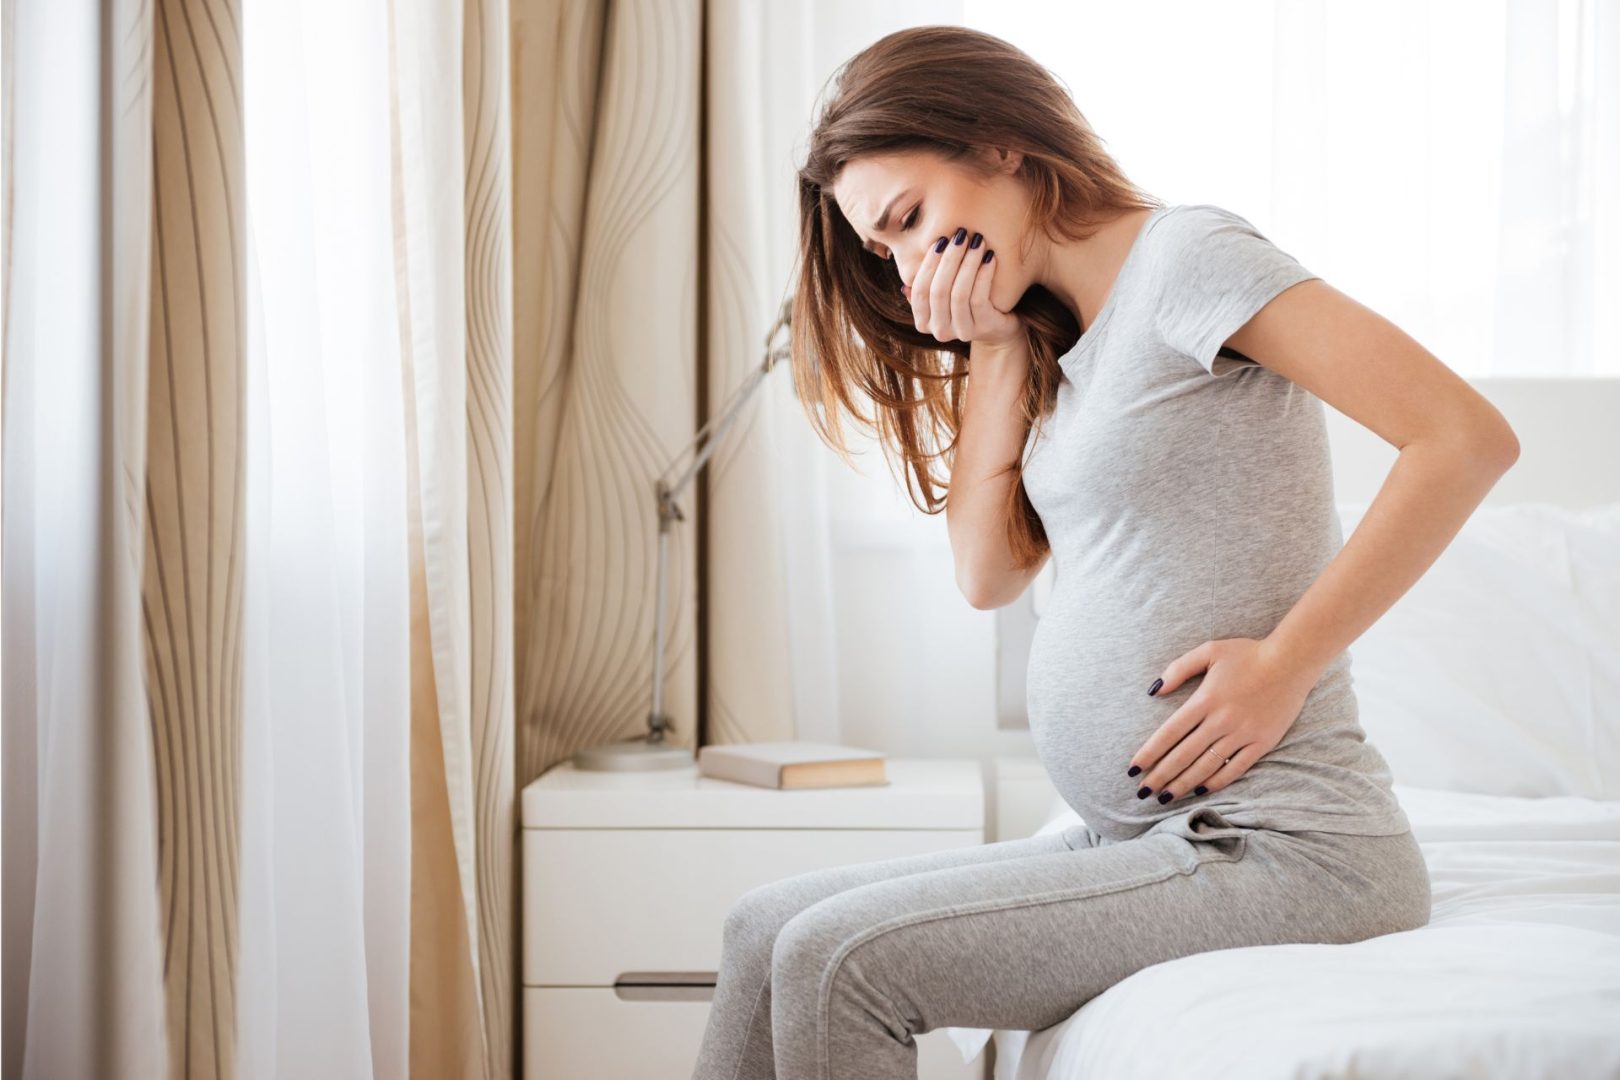 Los cambios emocionales durante el embarazo se estabilizan en el primer trimestre